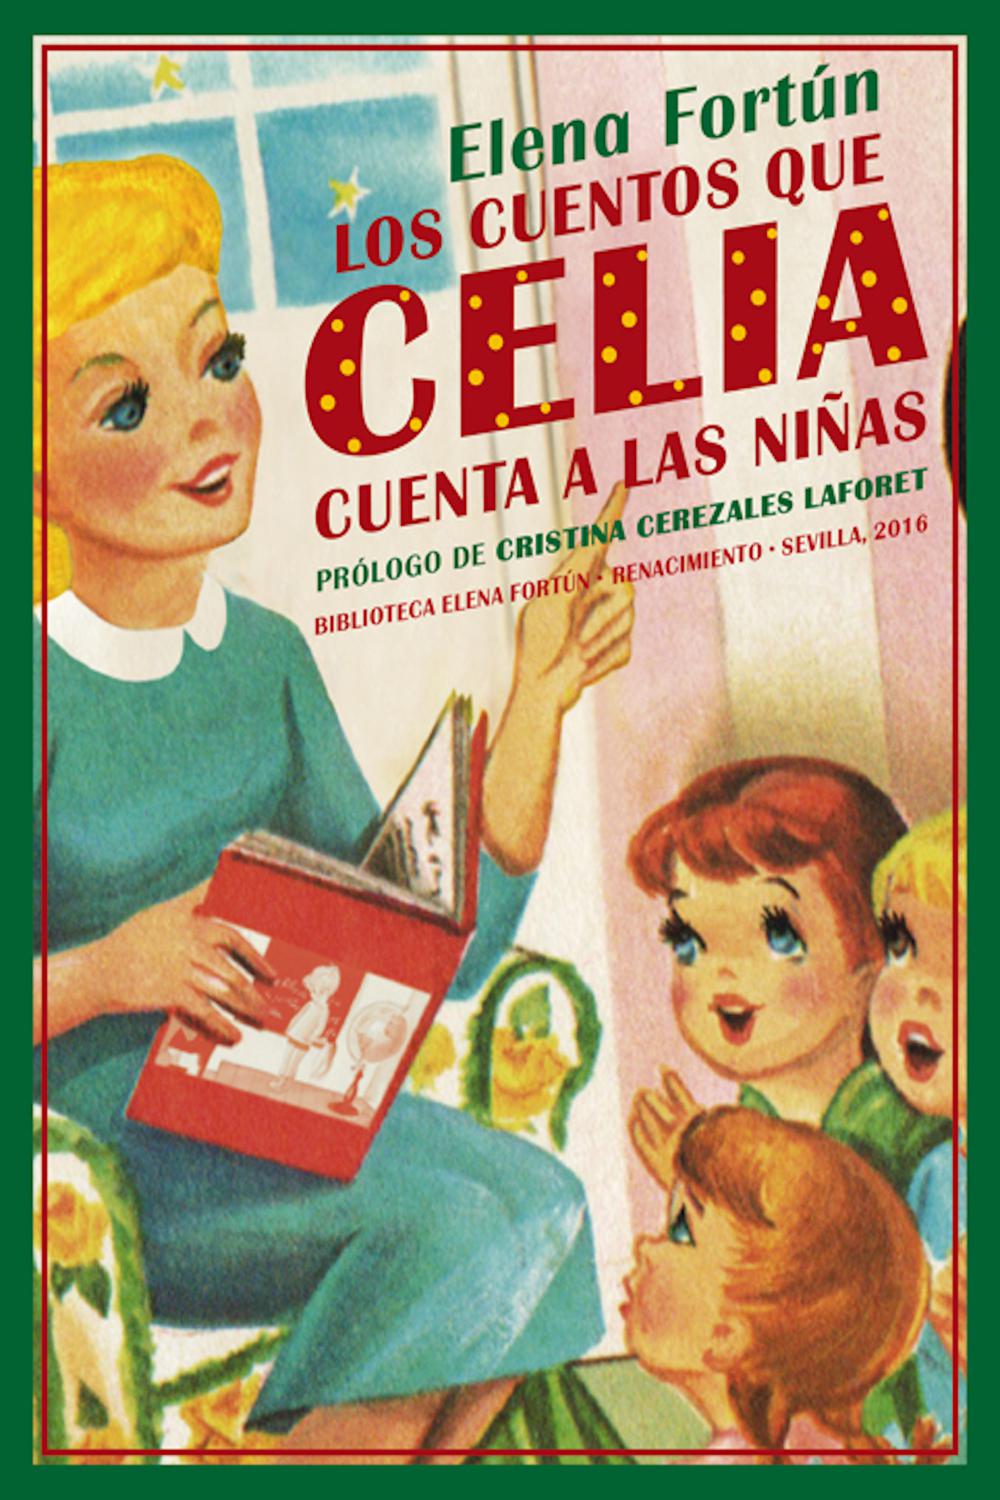 Los cuentos que Celia cuenta a las niñas - Elena Fortún